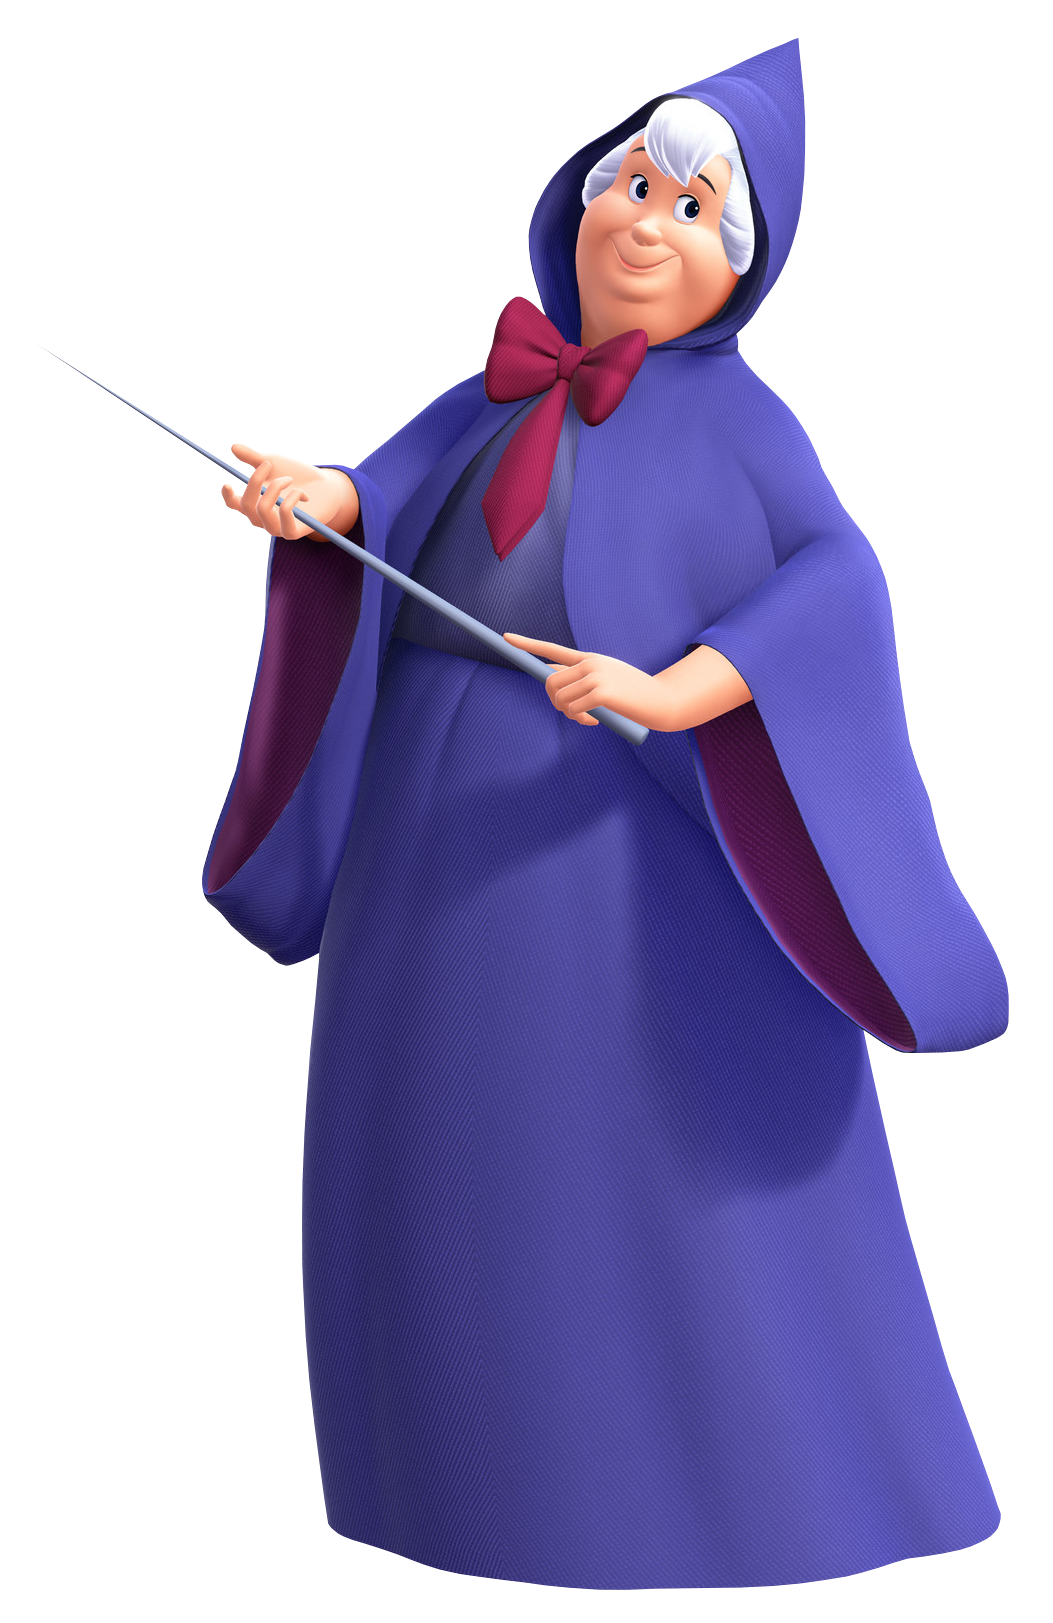 Fairy Godmother - Kingdom Hearts Wiki, the Kingdom Hearts encyclopedia